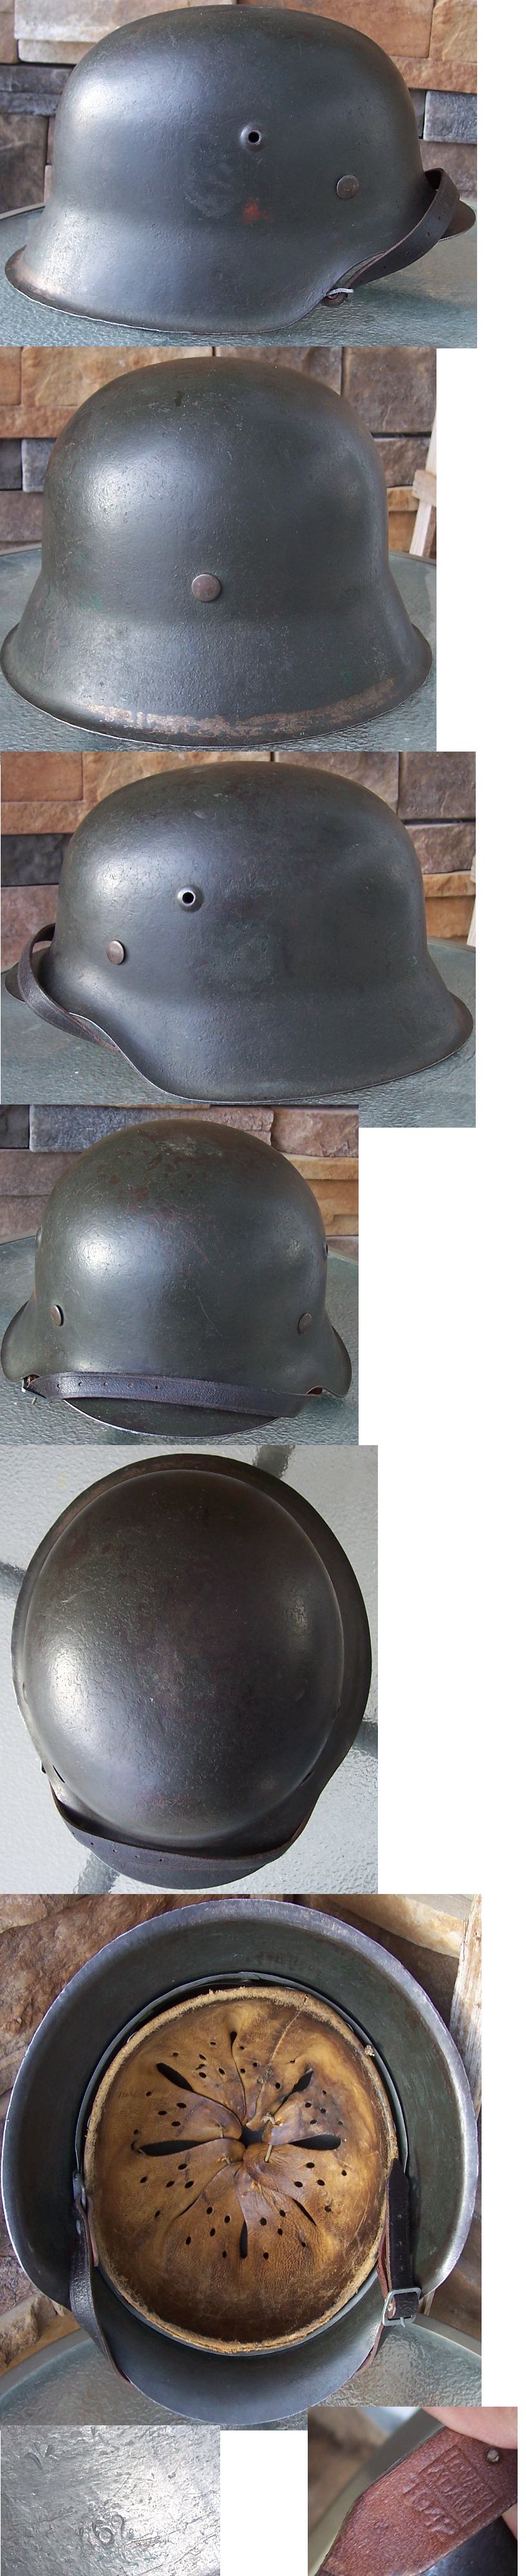 HKP-64 M42 Helmet